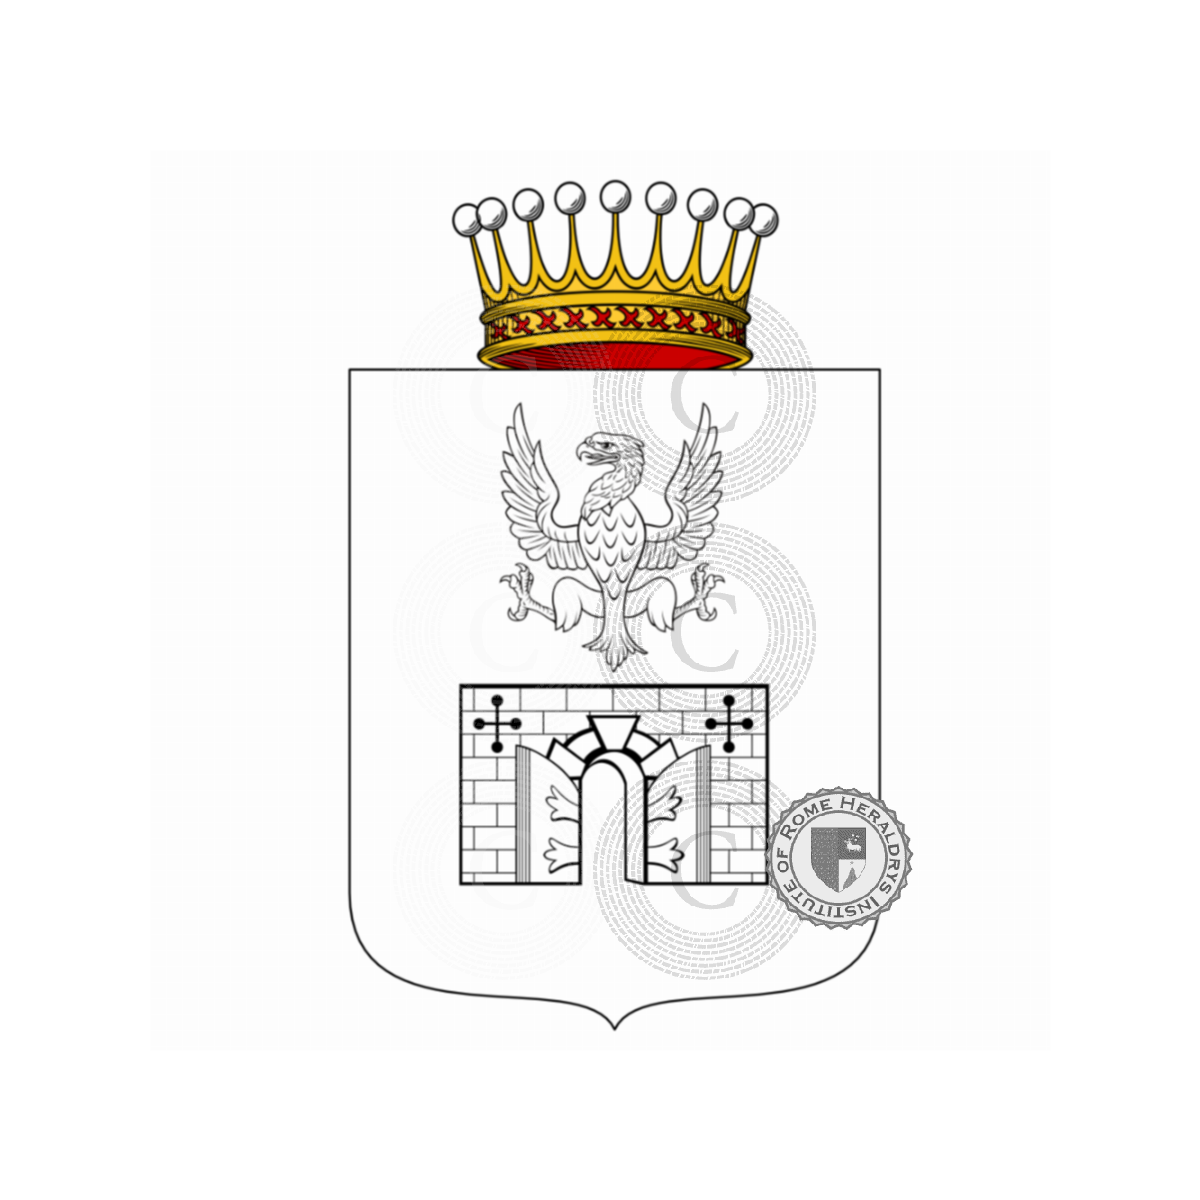 Wappen der FamilieMurari dalla Corte Brà